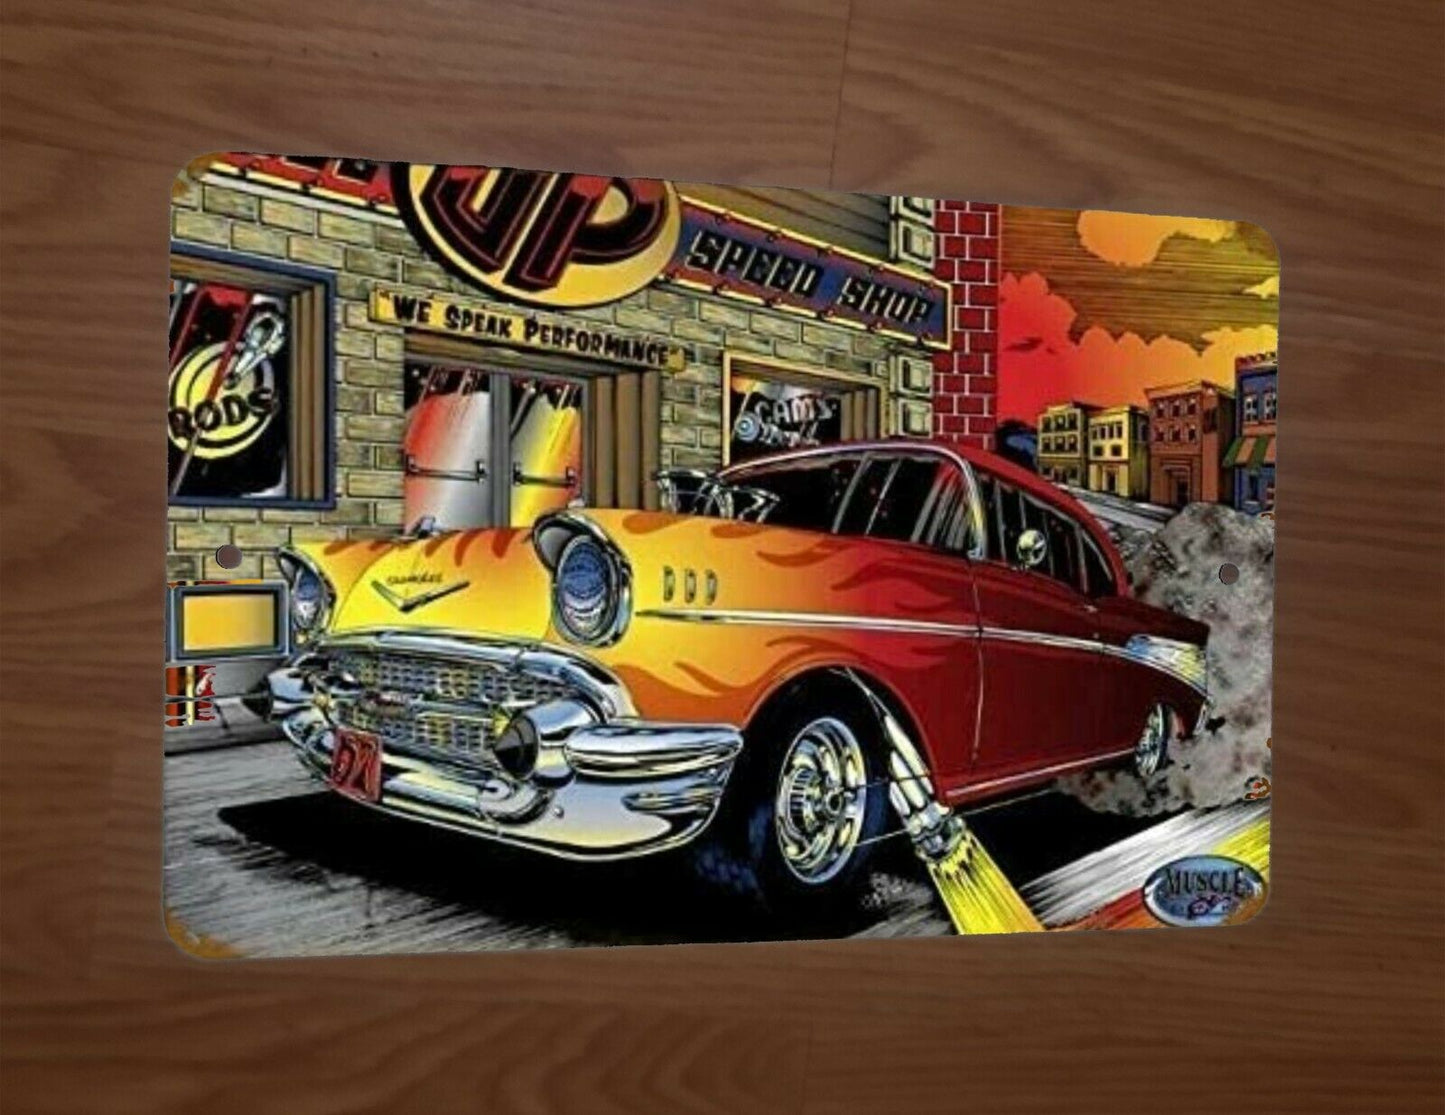 Classic Hot Rod Speed Shop Artwork Cartoon 1950s Gasser 8x12 Metal Wall Car Sign Garage Poster